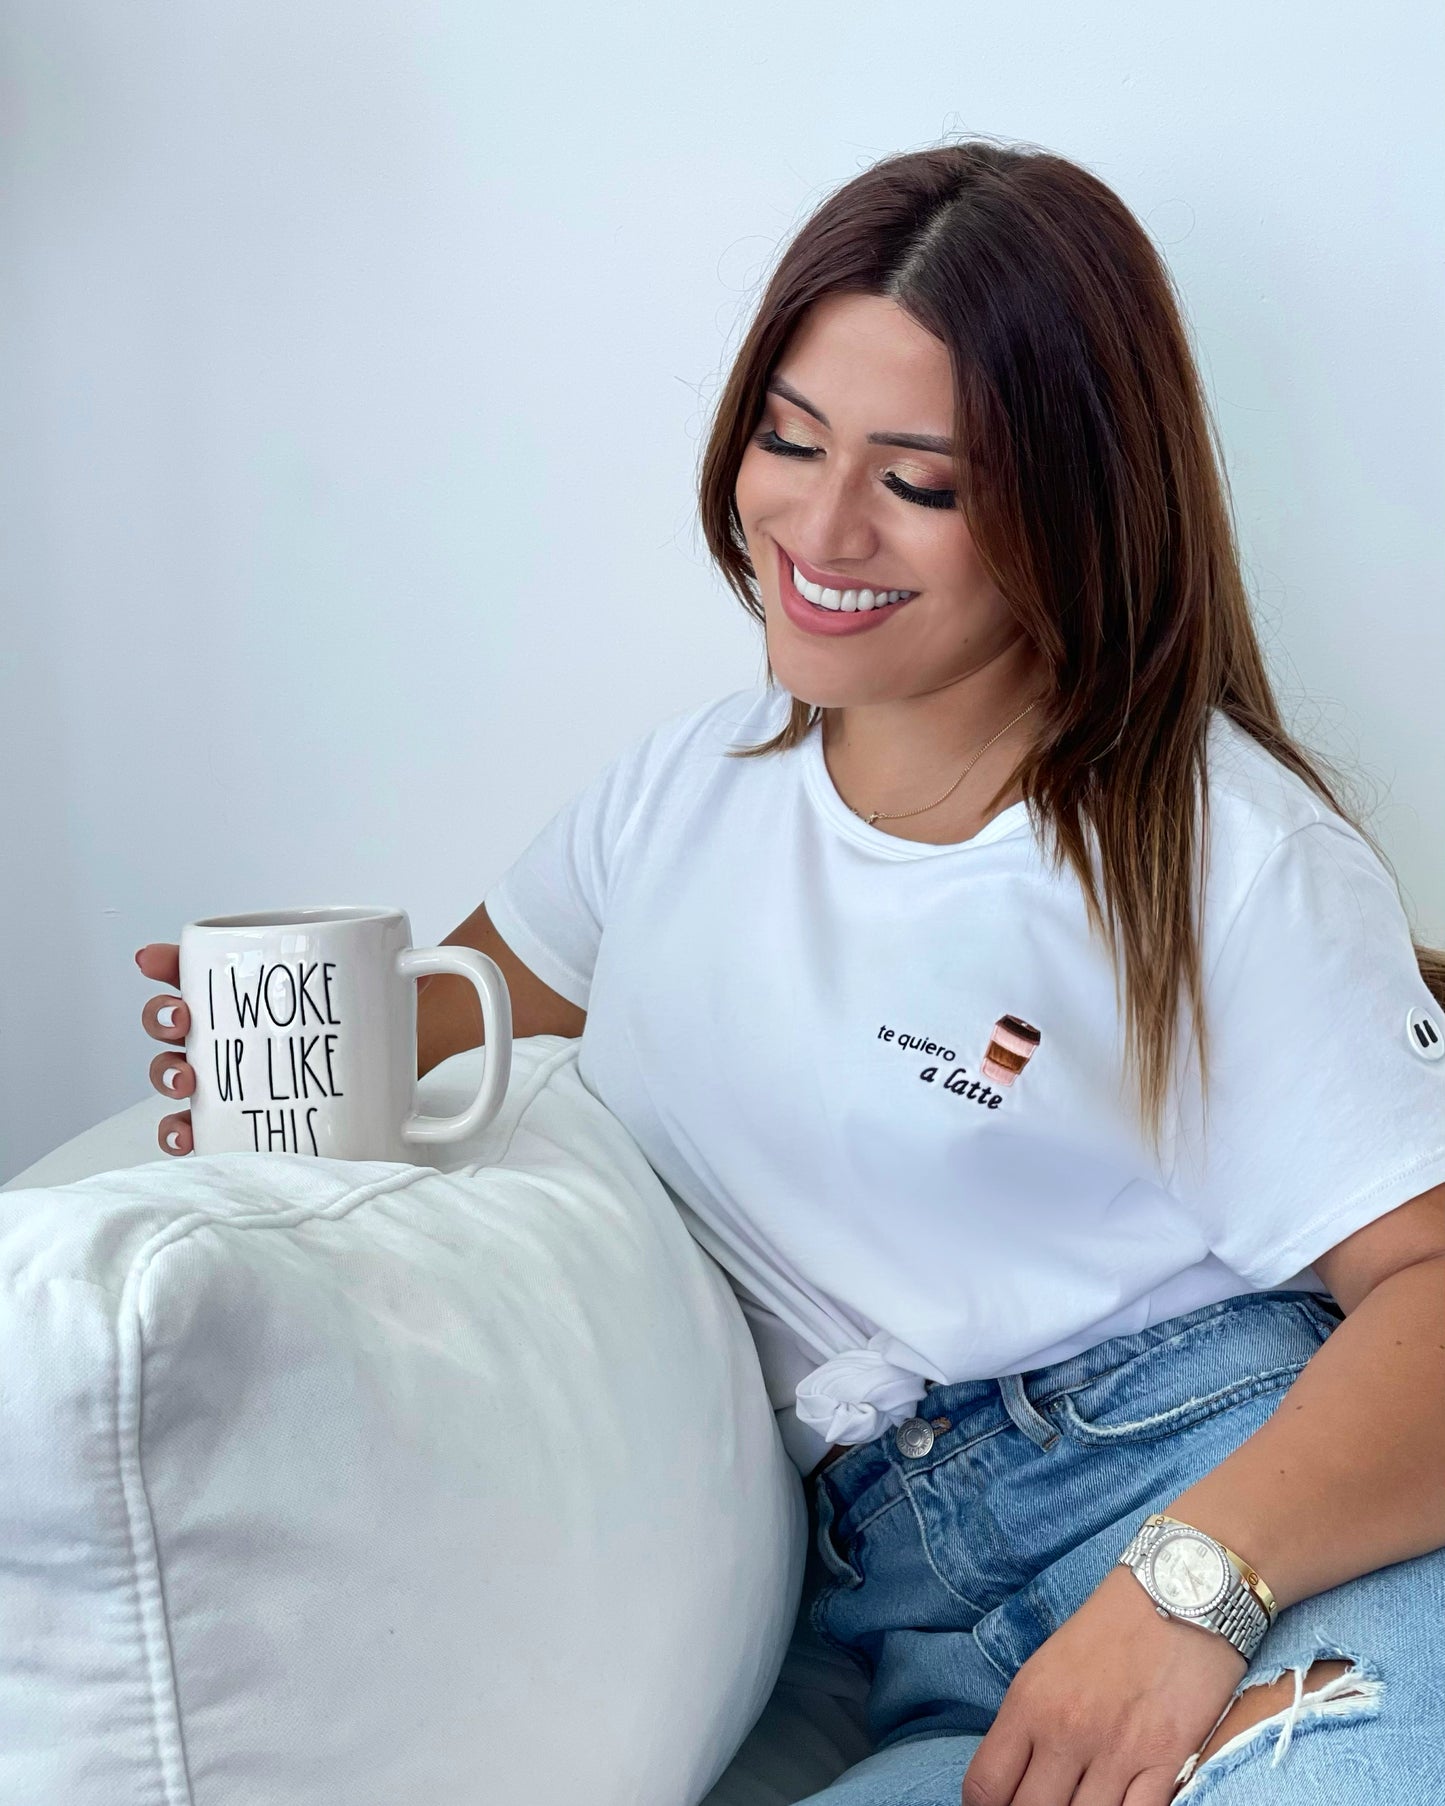 Women's T-Shirt - "Te quiero a latte"